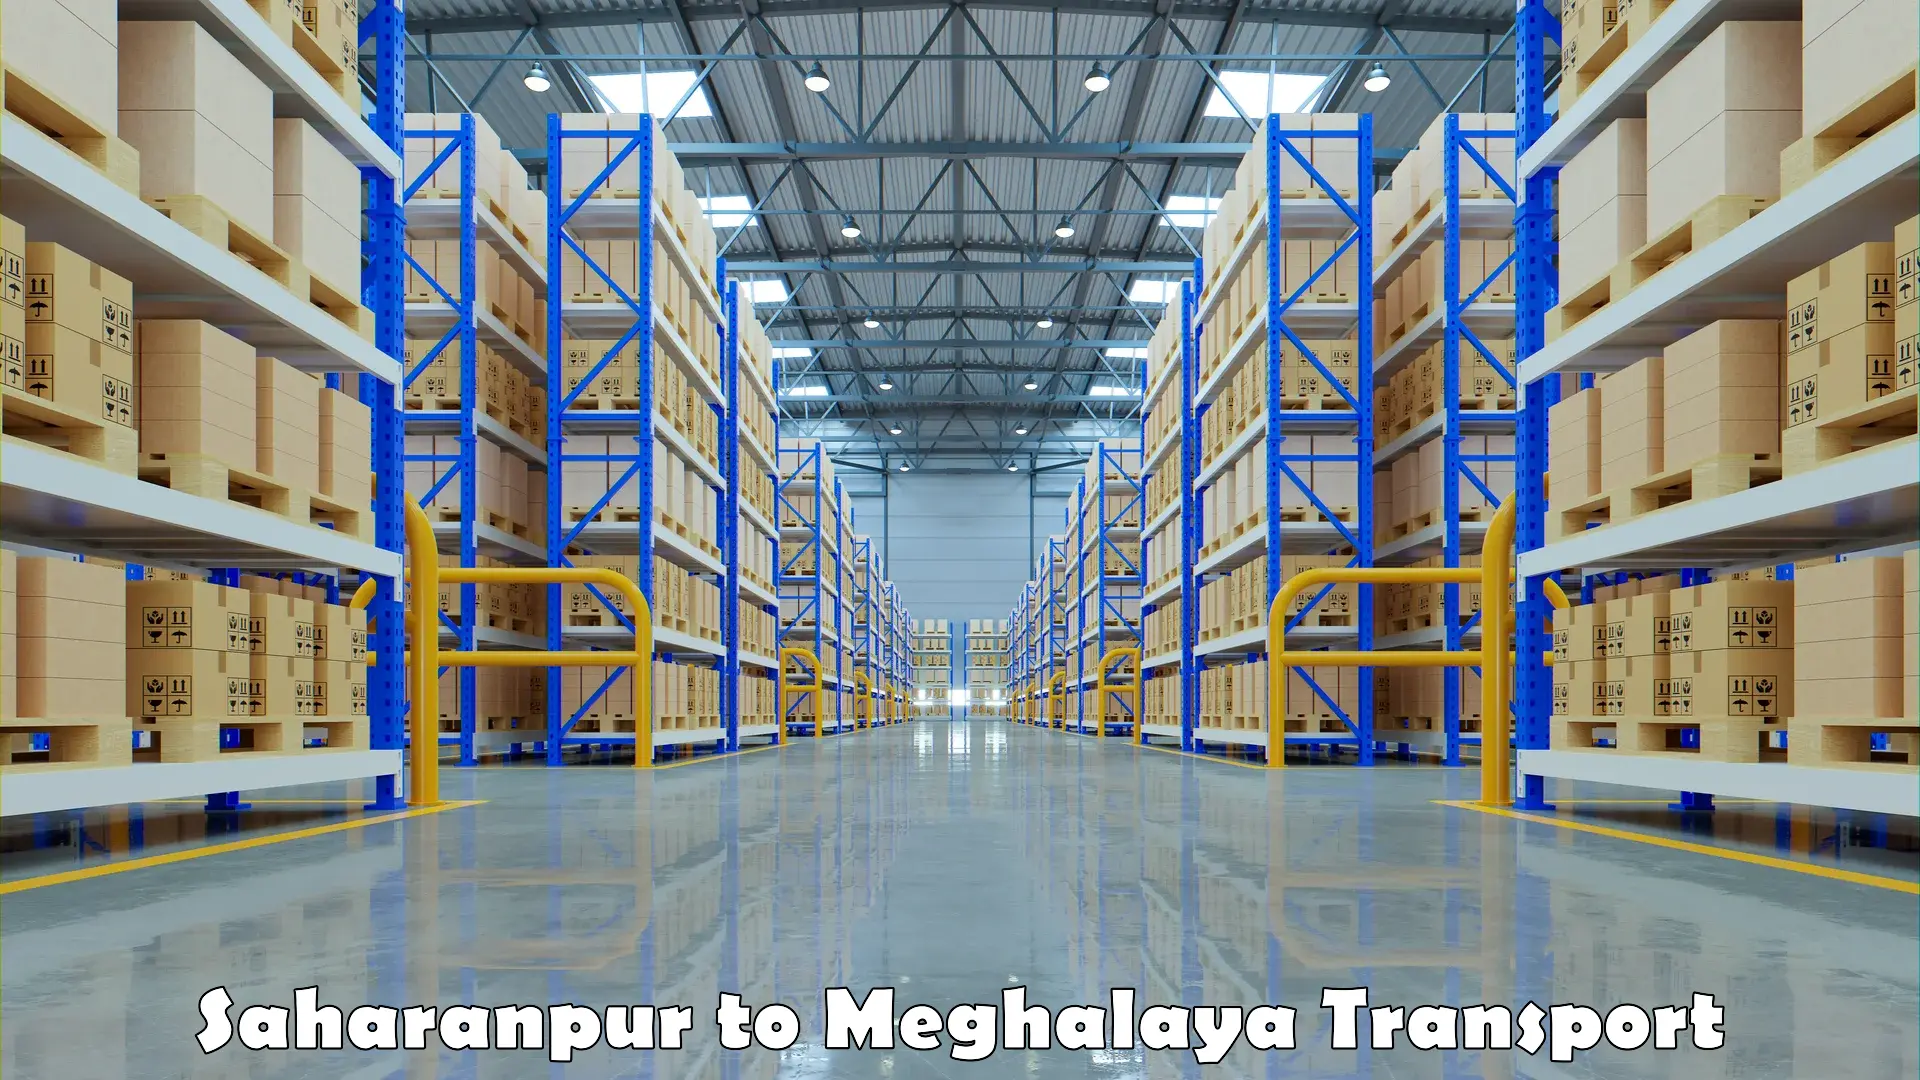 Furniture transport service Saharanpur to Meghalaya